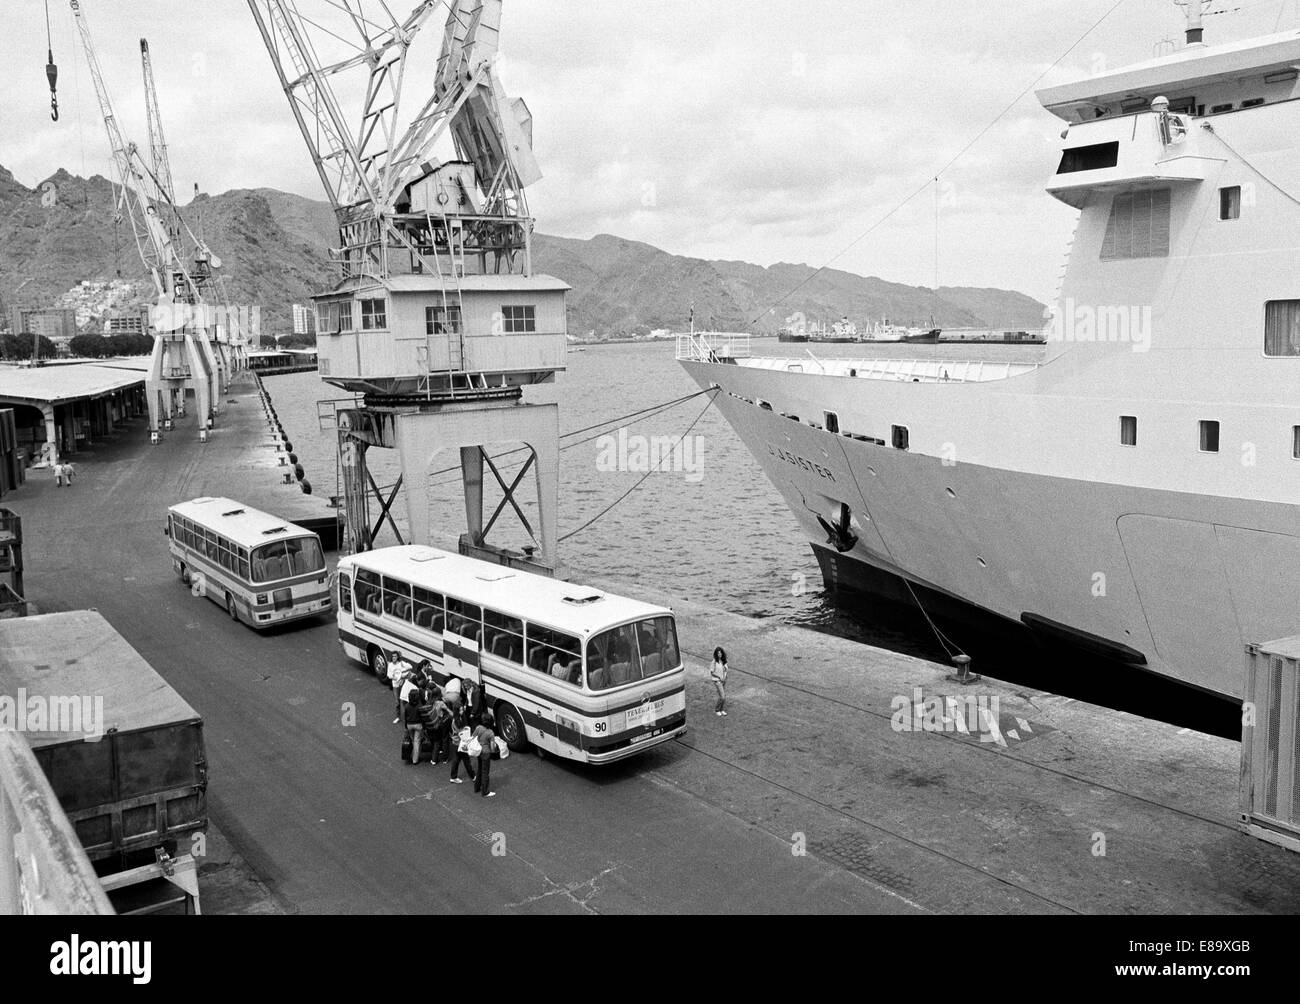 Achtziger Jahre, Touristengruppe am Reisebus im Seehafen von Santa Cruz de Tenerife, Teneriffa, Kanarische Inseln, Spanien Stock Photo